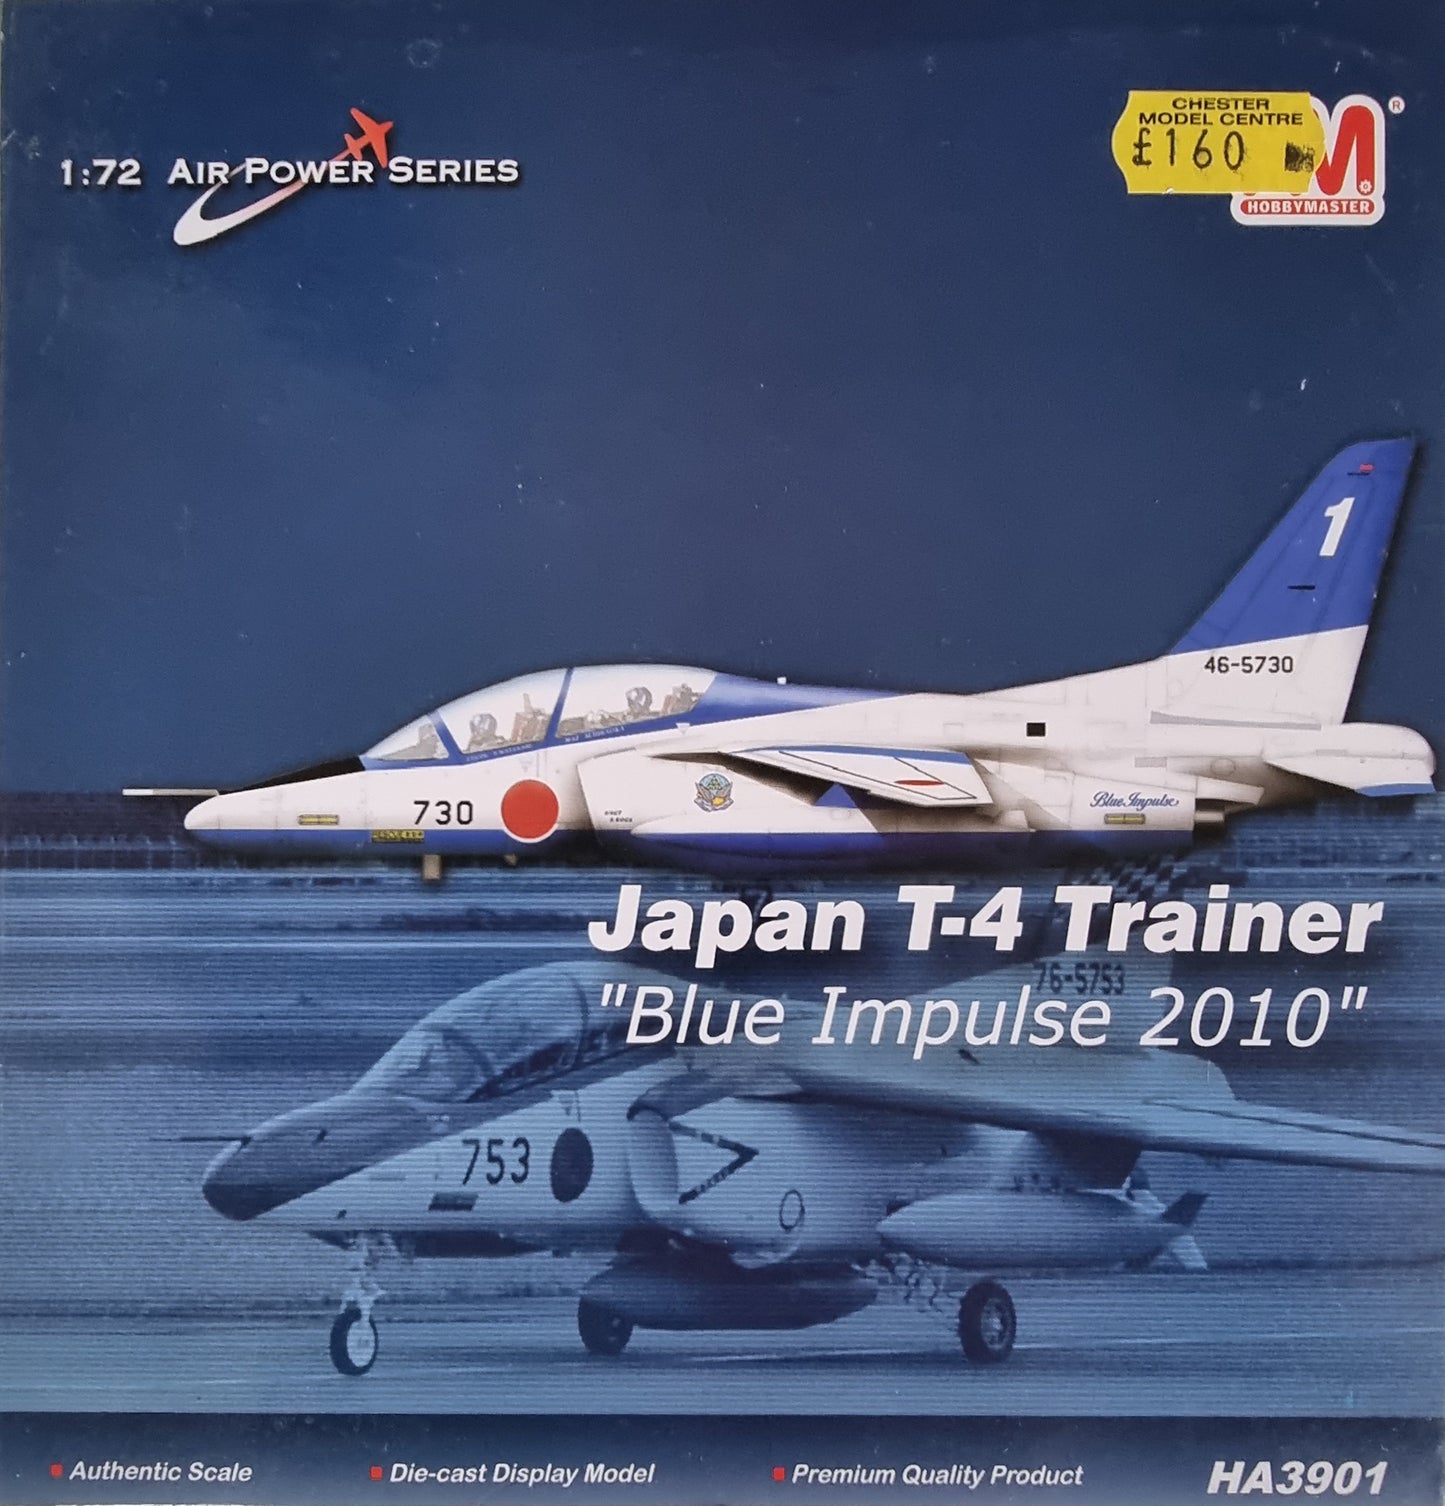 Hobby Master HA3901 1:72 Air Power Series Japan T-4 Trainer "Blue Impulse 2010" - Chester Model Centre